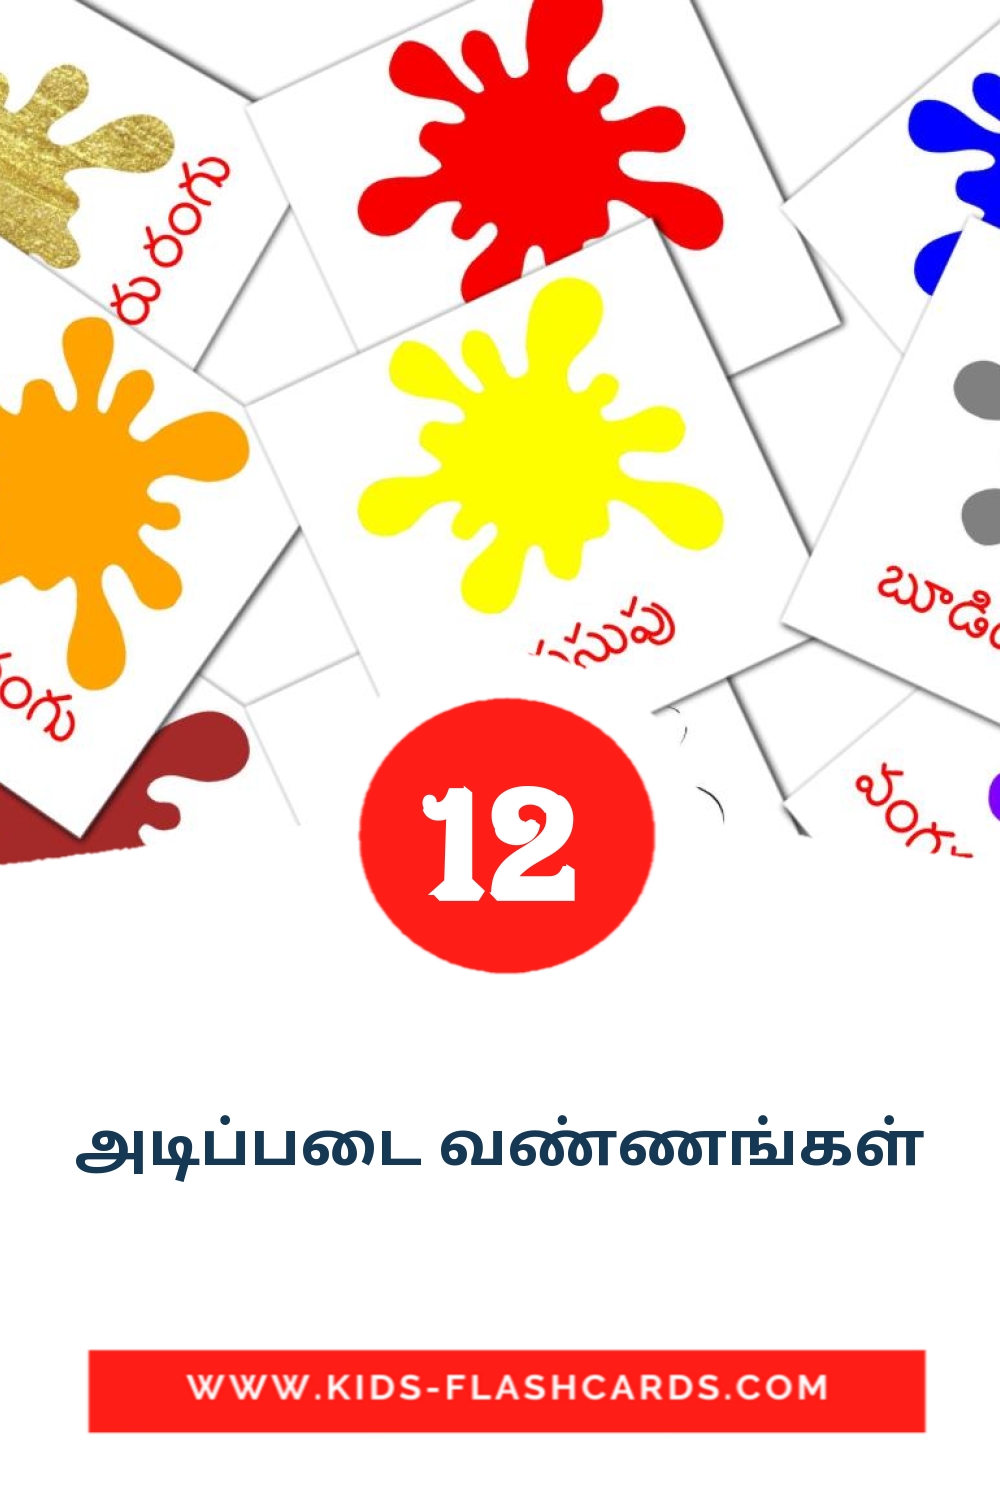 12 cartes illustrées de அடிப்படை வண்ணங்கள் pour la maternelle en tamil